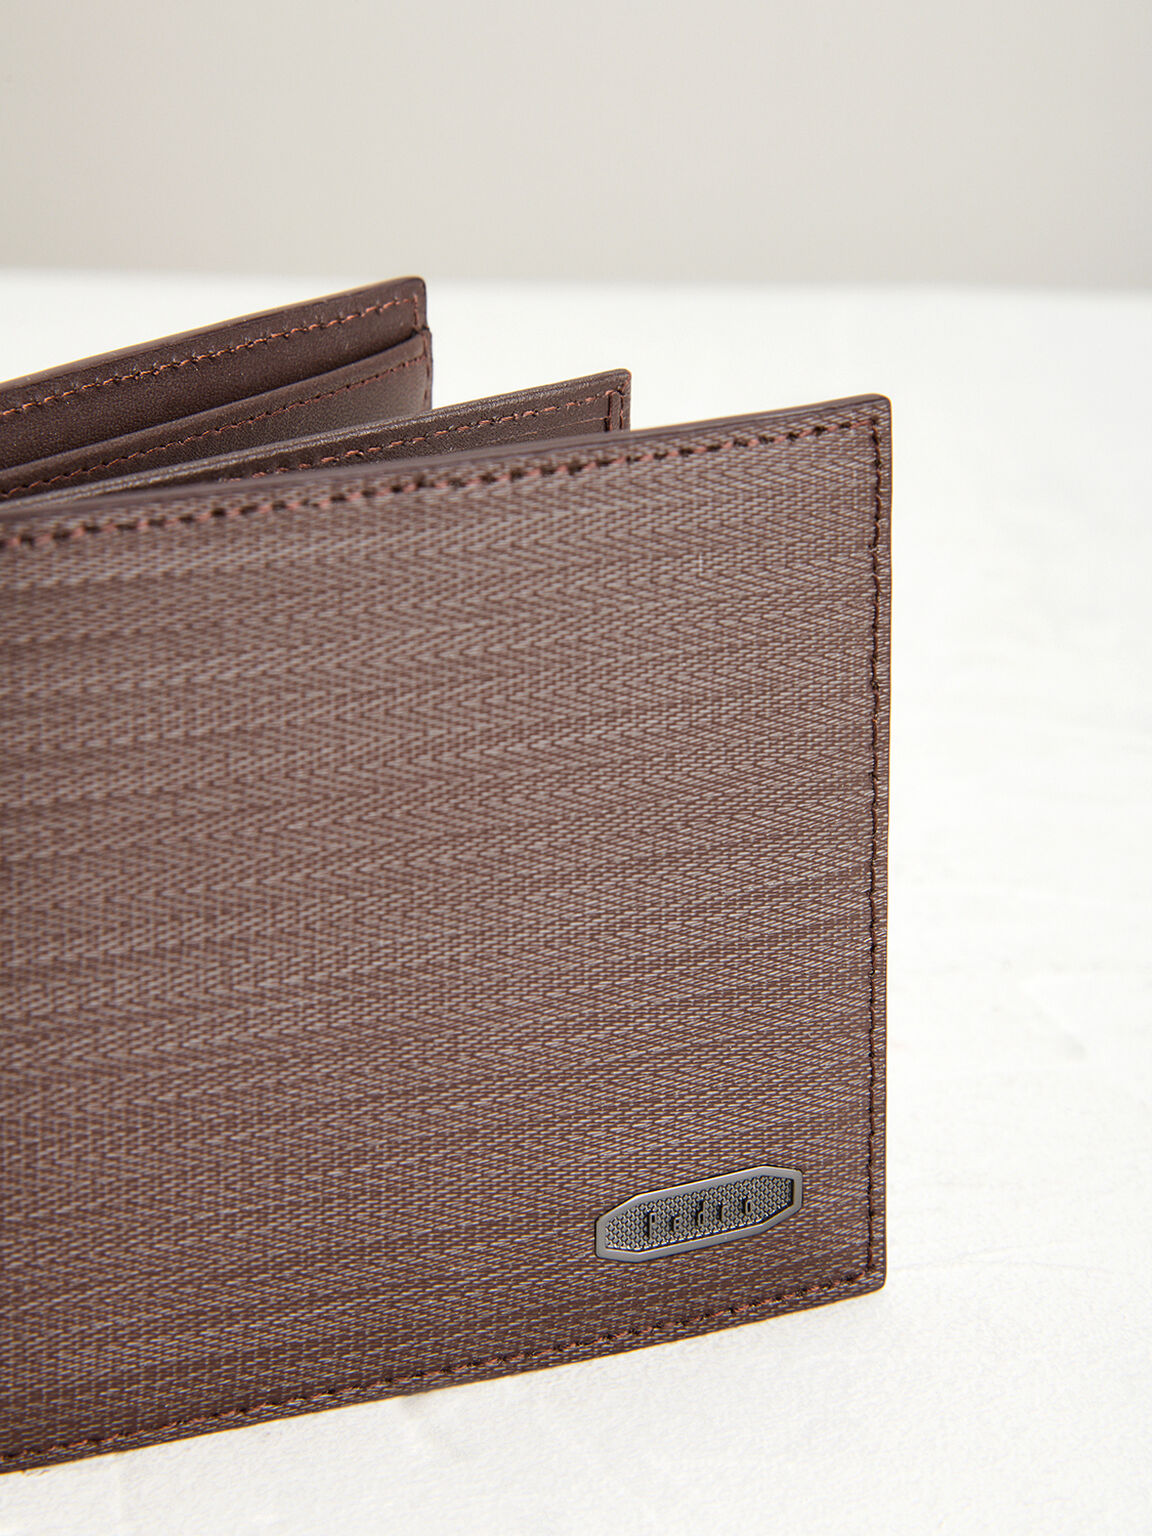 Embossed Leather Bi-Fold Wallet, Dark Brown